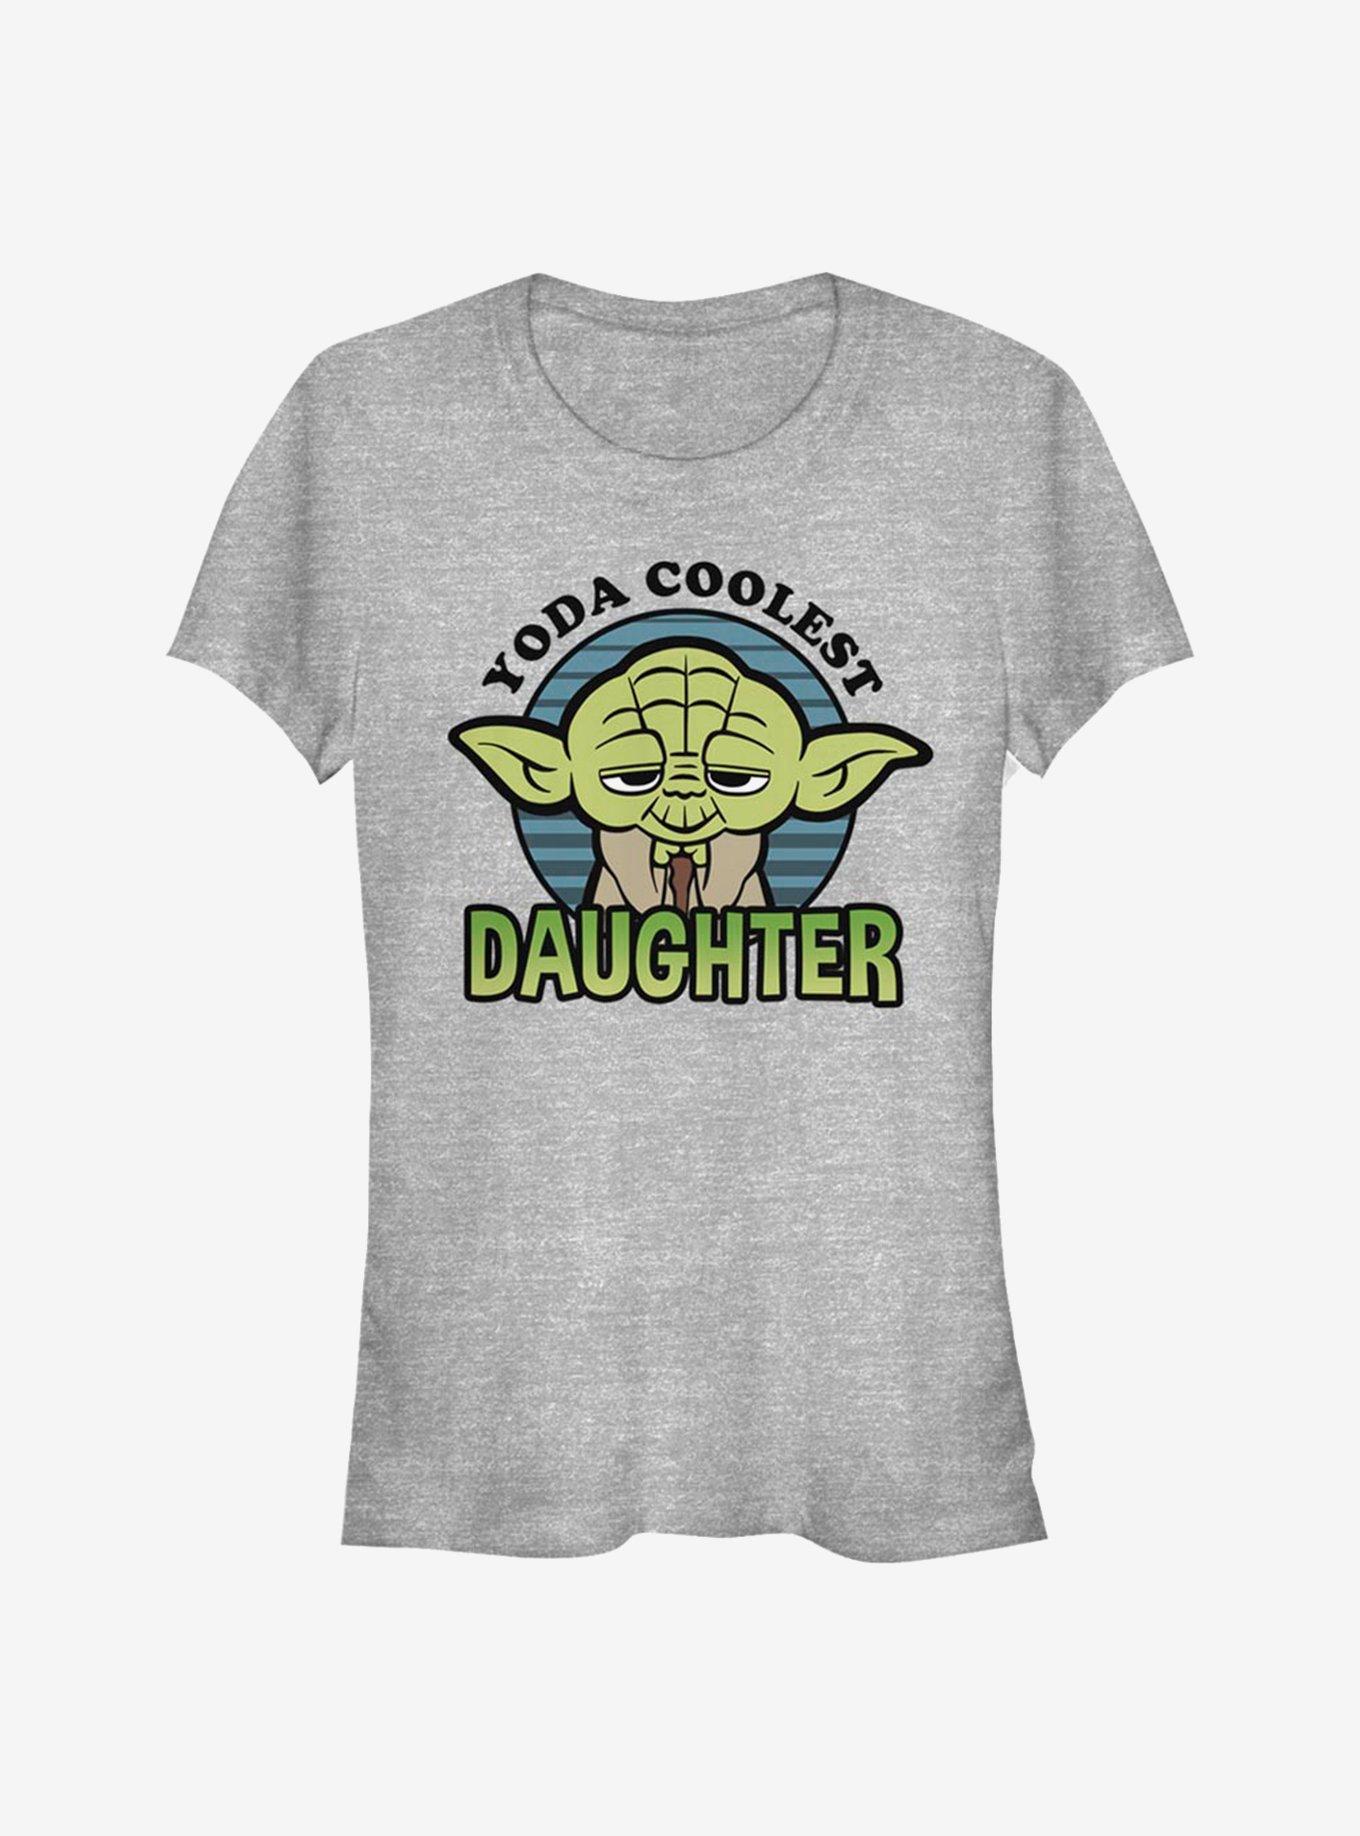 Star Wars Yoda Coolest Daughter Girls T-Shirt